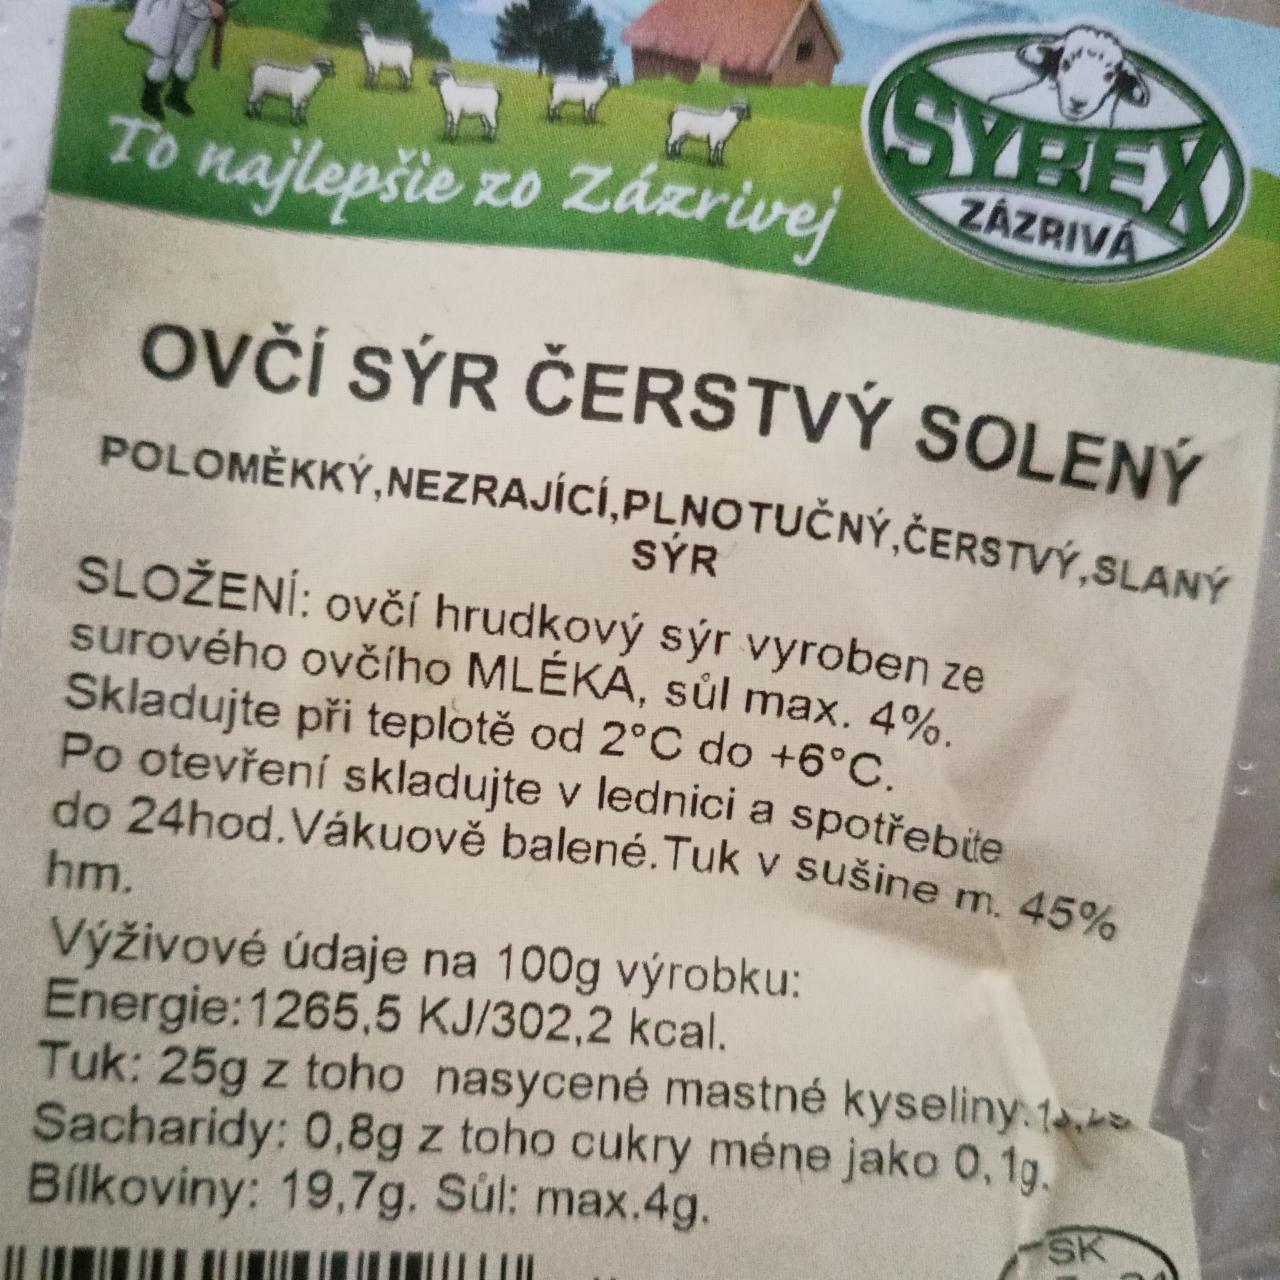 Fotografie - Ostrý sýr čerstvý solený Syrex Zázrivá